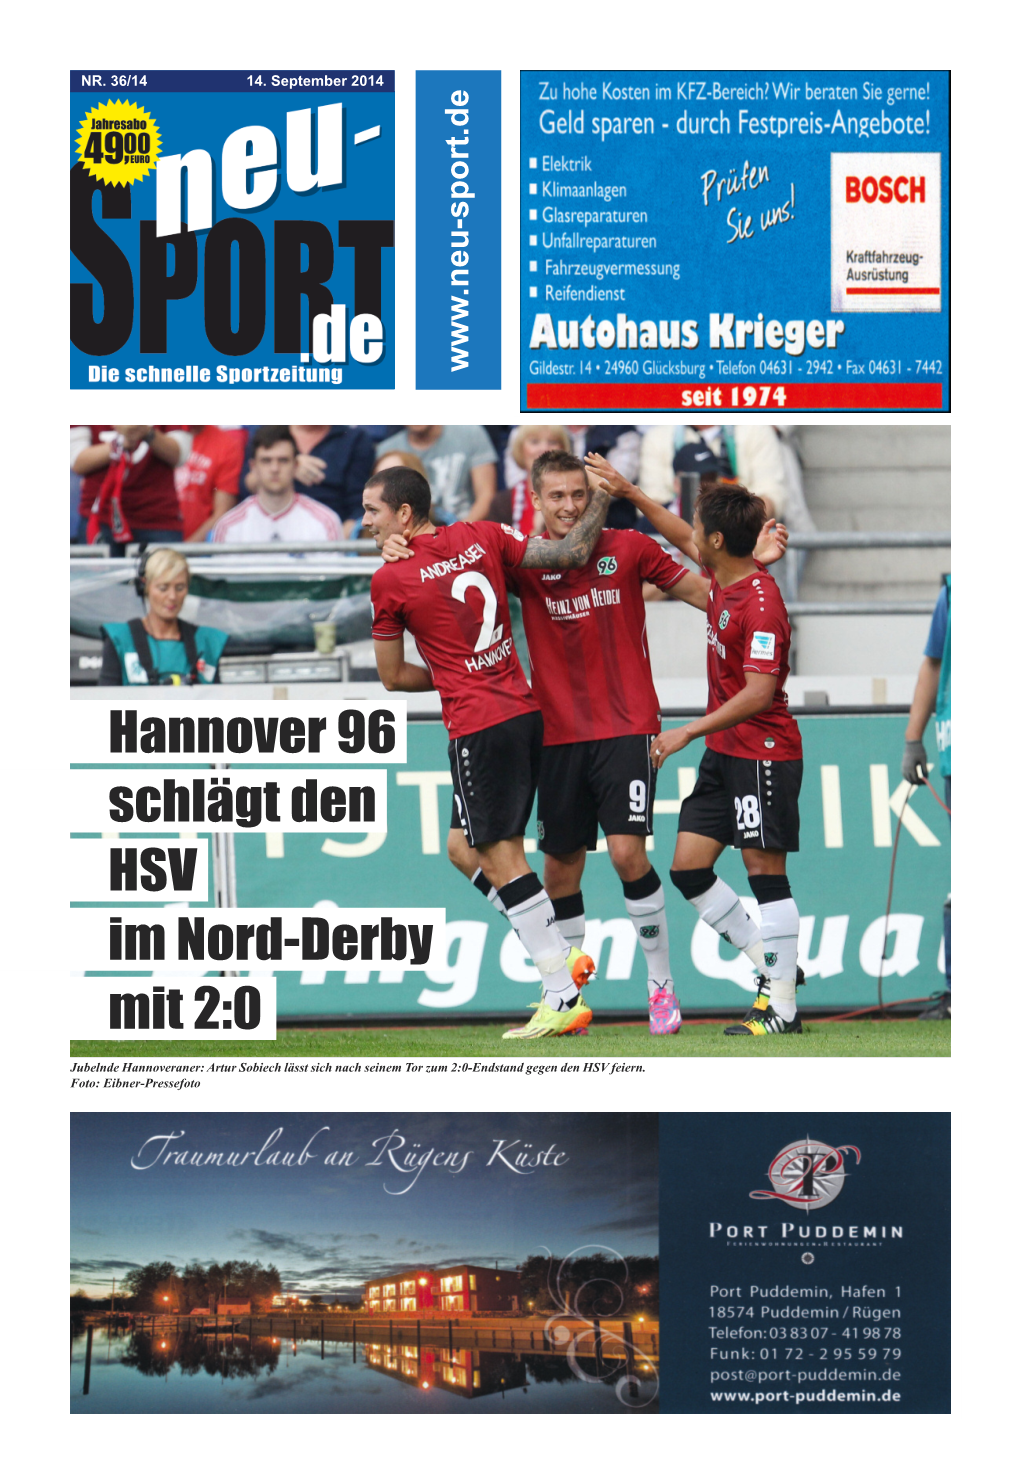 Hannover 96 Schlägt Den HSV Im Nord-Derby Mit 2:0